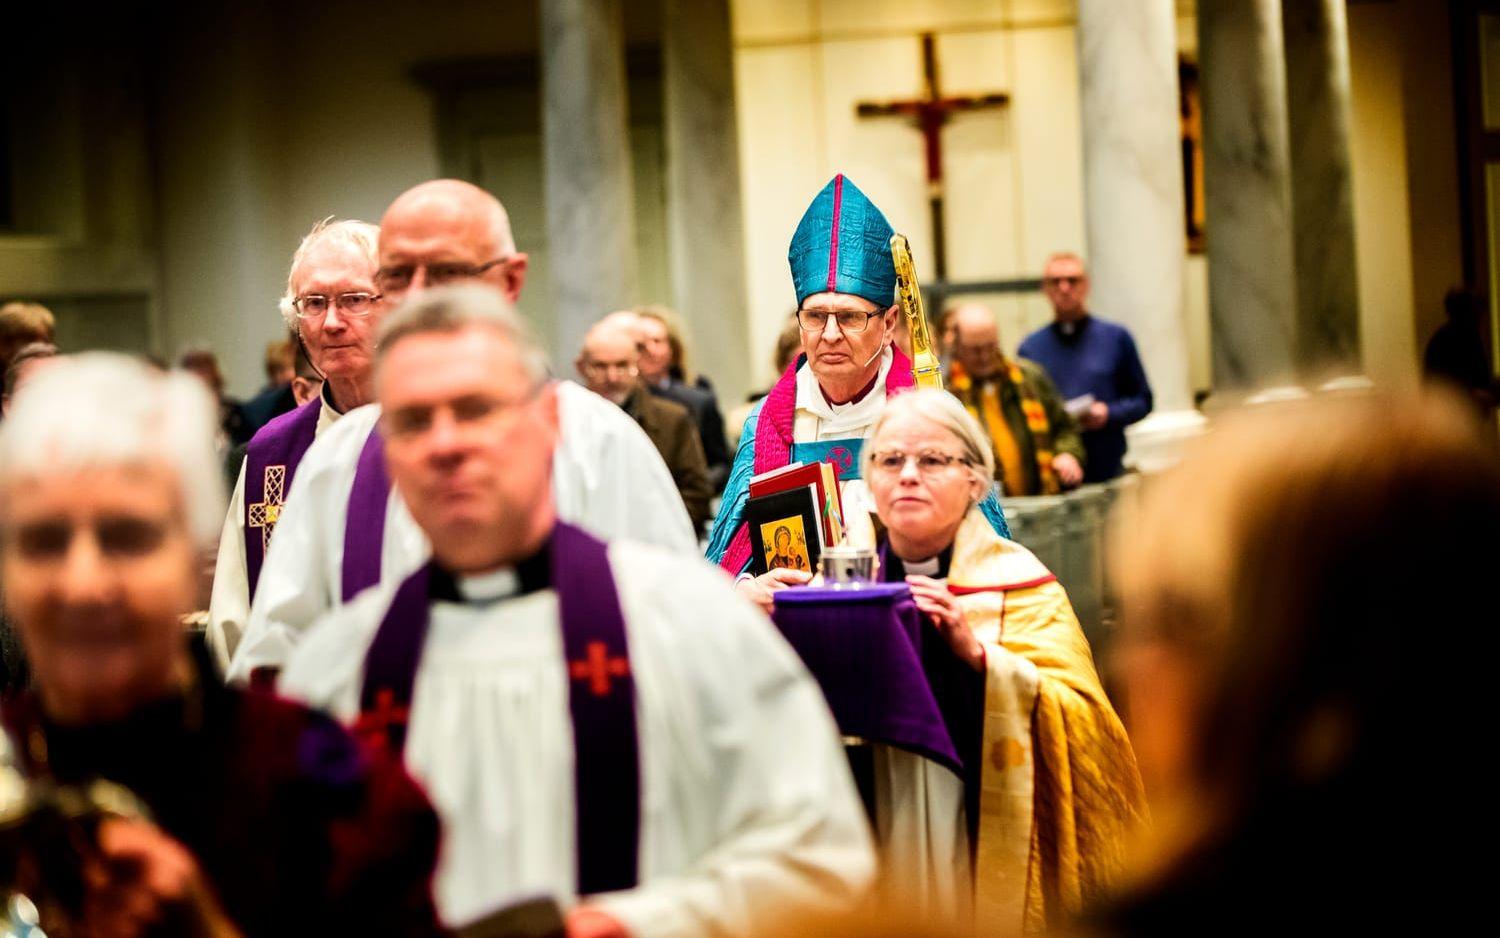 Nu lämnar biskop Per Eckerdal sin tjänst och symboliskt lämnar han över sin stav under gudstjänsten.